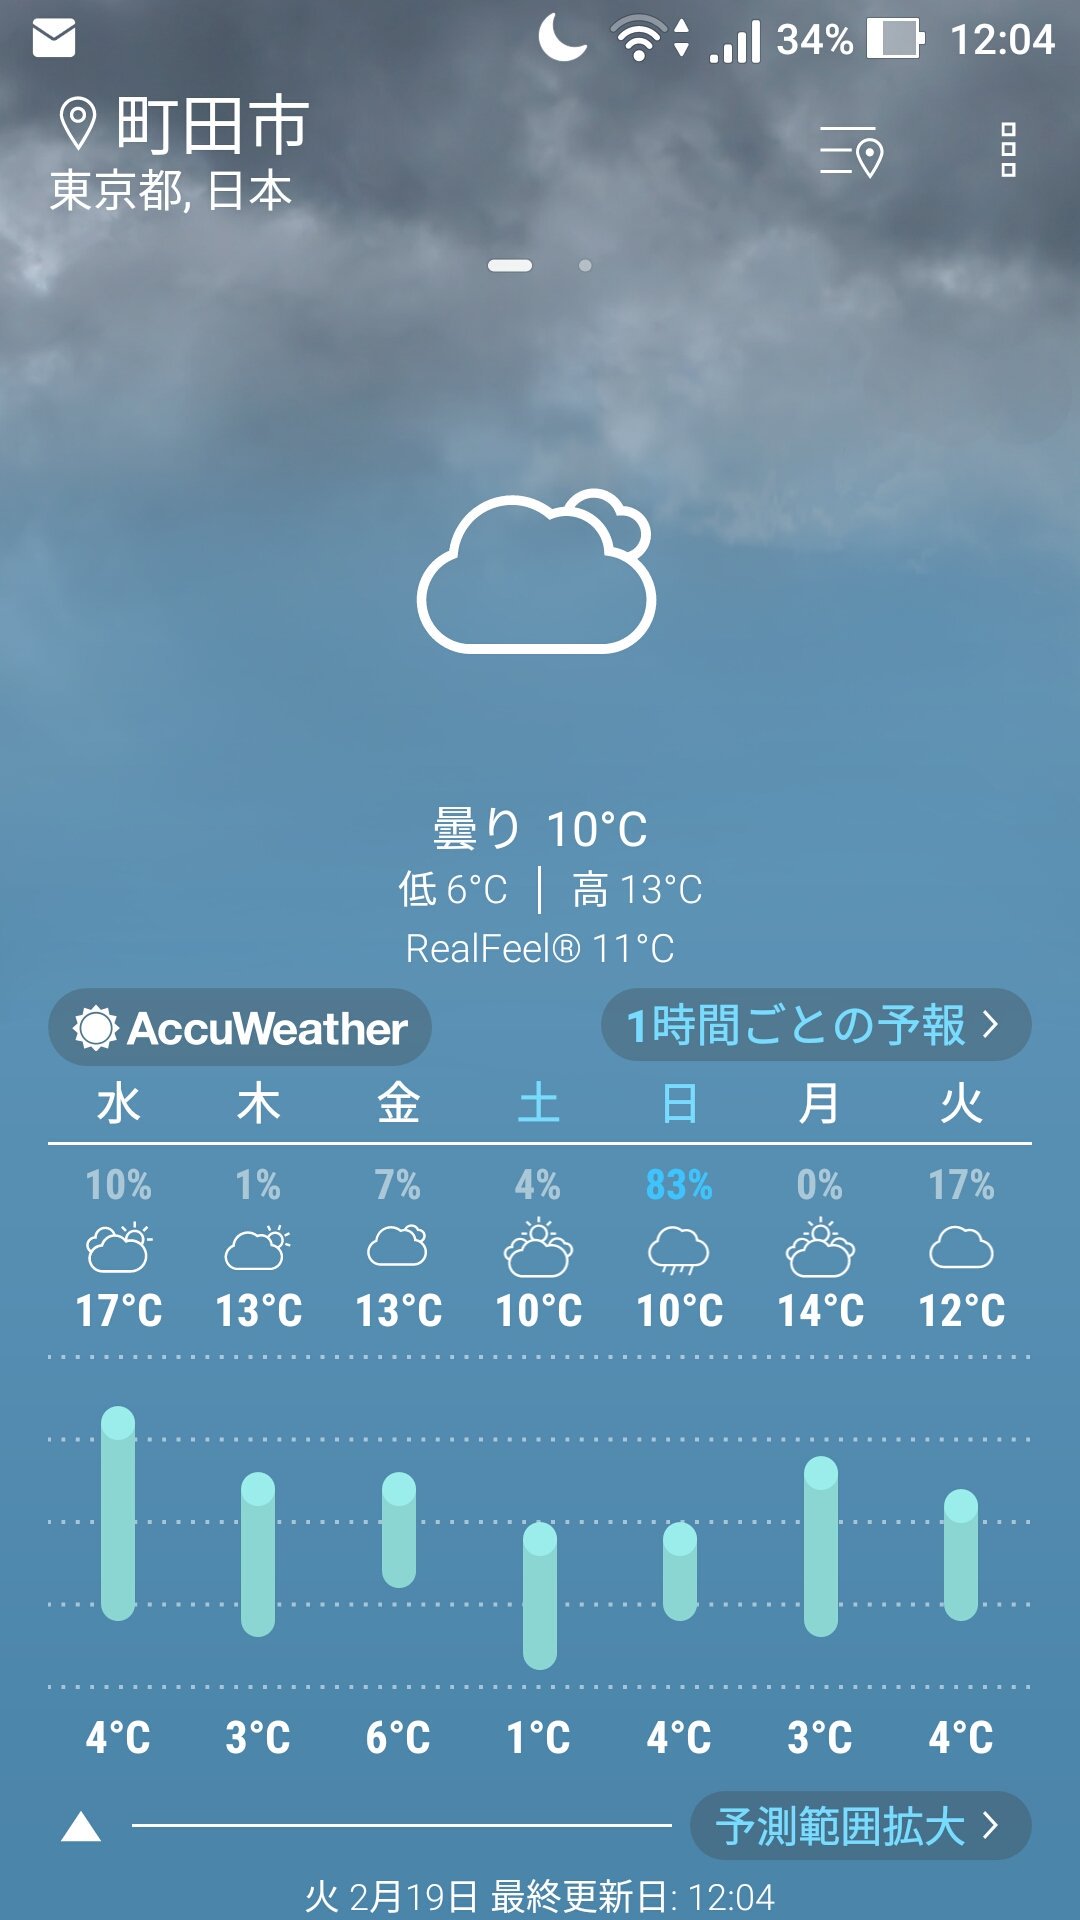 町田高校帰宅部 こんにちは 2月19日火曜日です それでは天気予報です 東京都町田市現在の天気は曇り 気温 10 です この後午後1時に最高気温13 になる予想です 以上お天気でした T Co Zsoibh9uzf Twitter